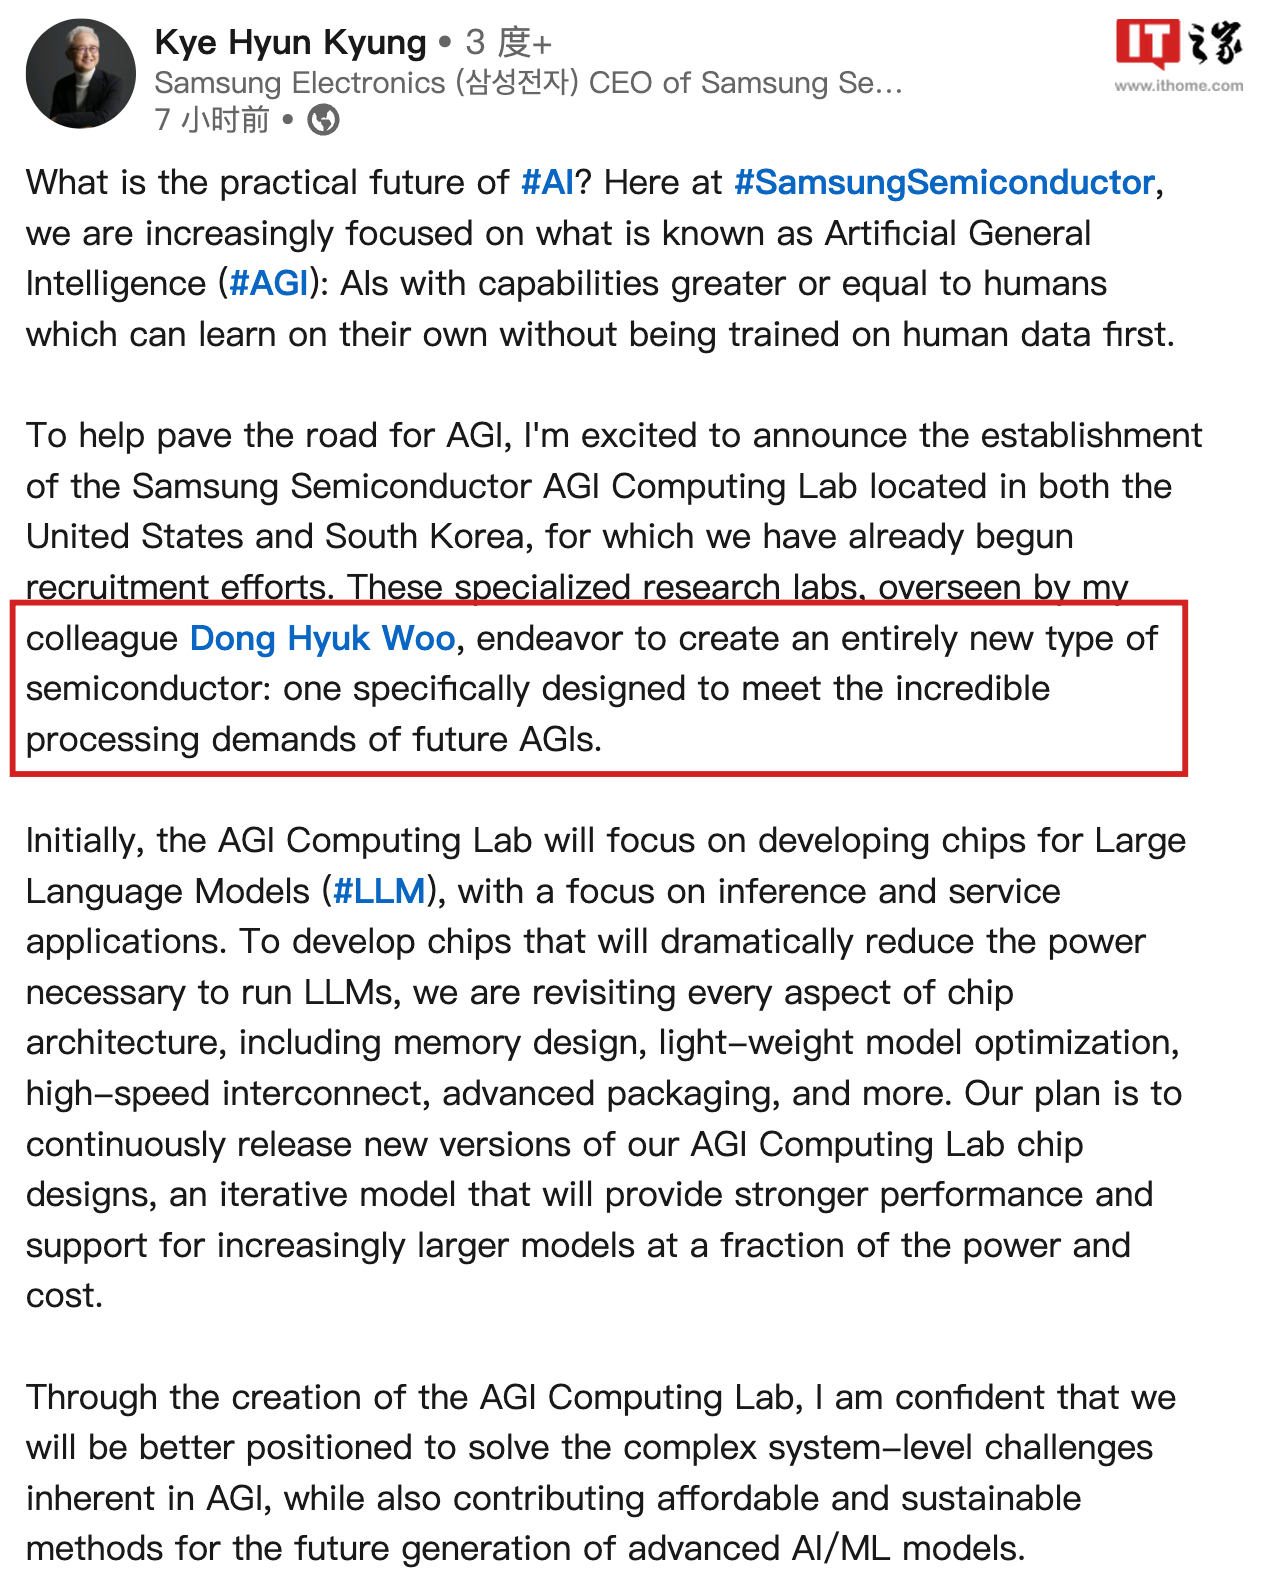 三星宣布成立 AGI 计算实验室，研究满足未来需求的下一代半导体